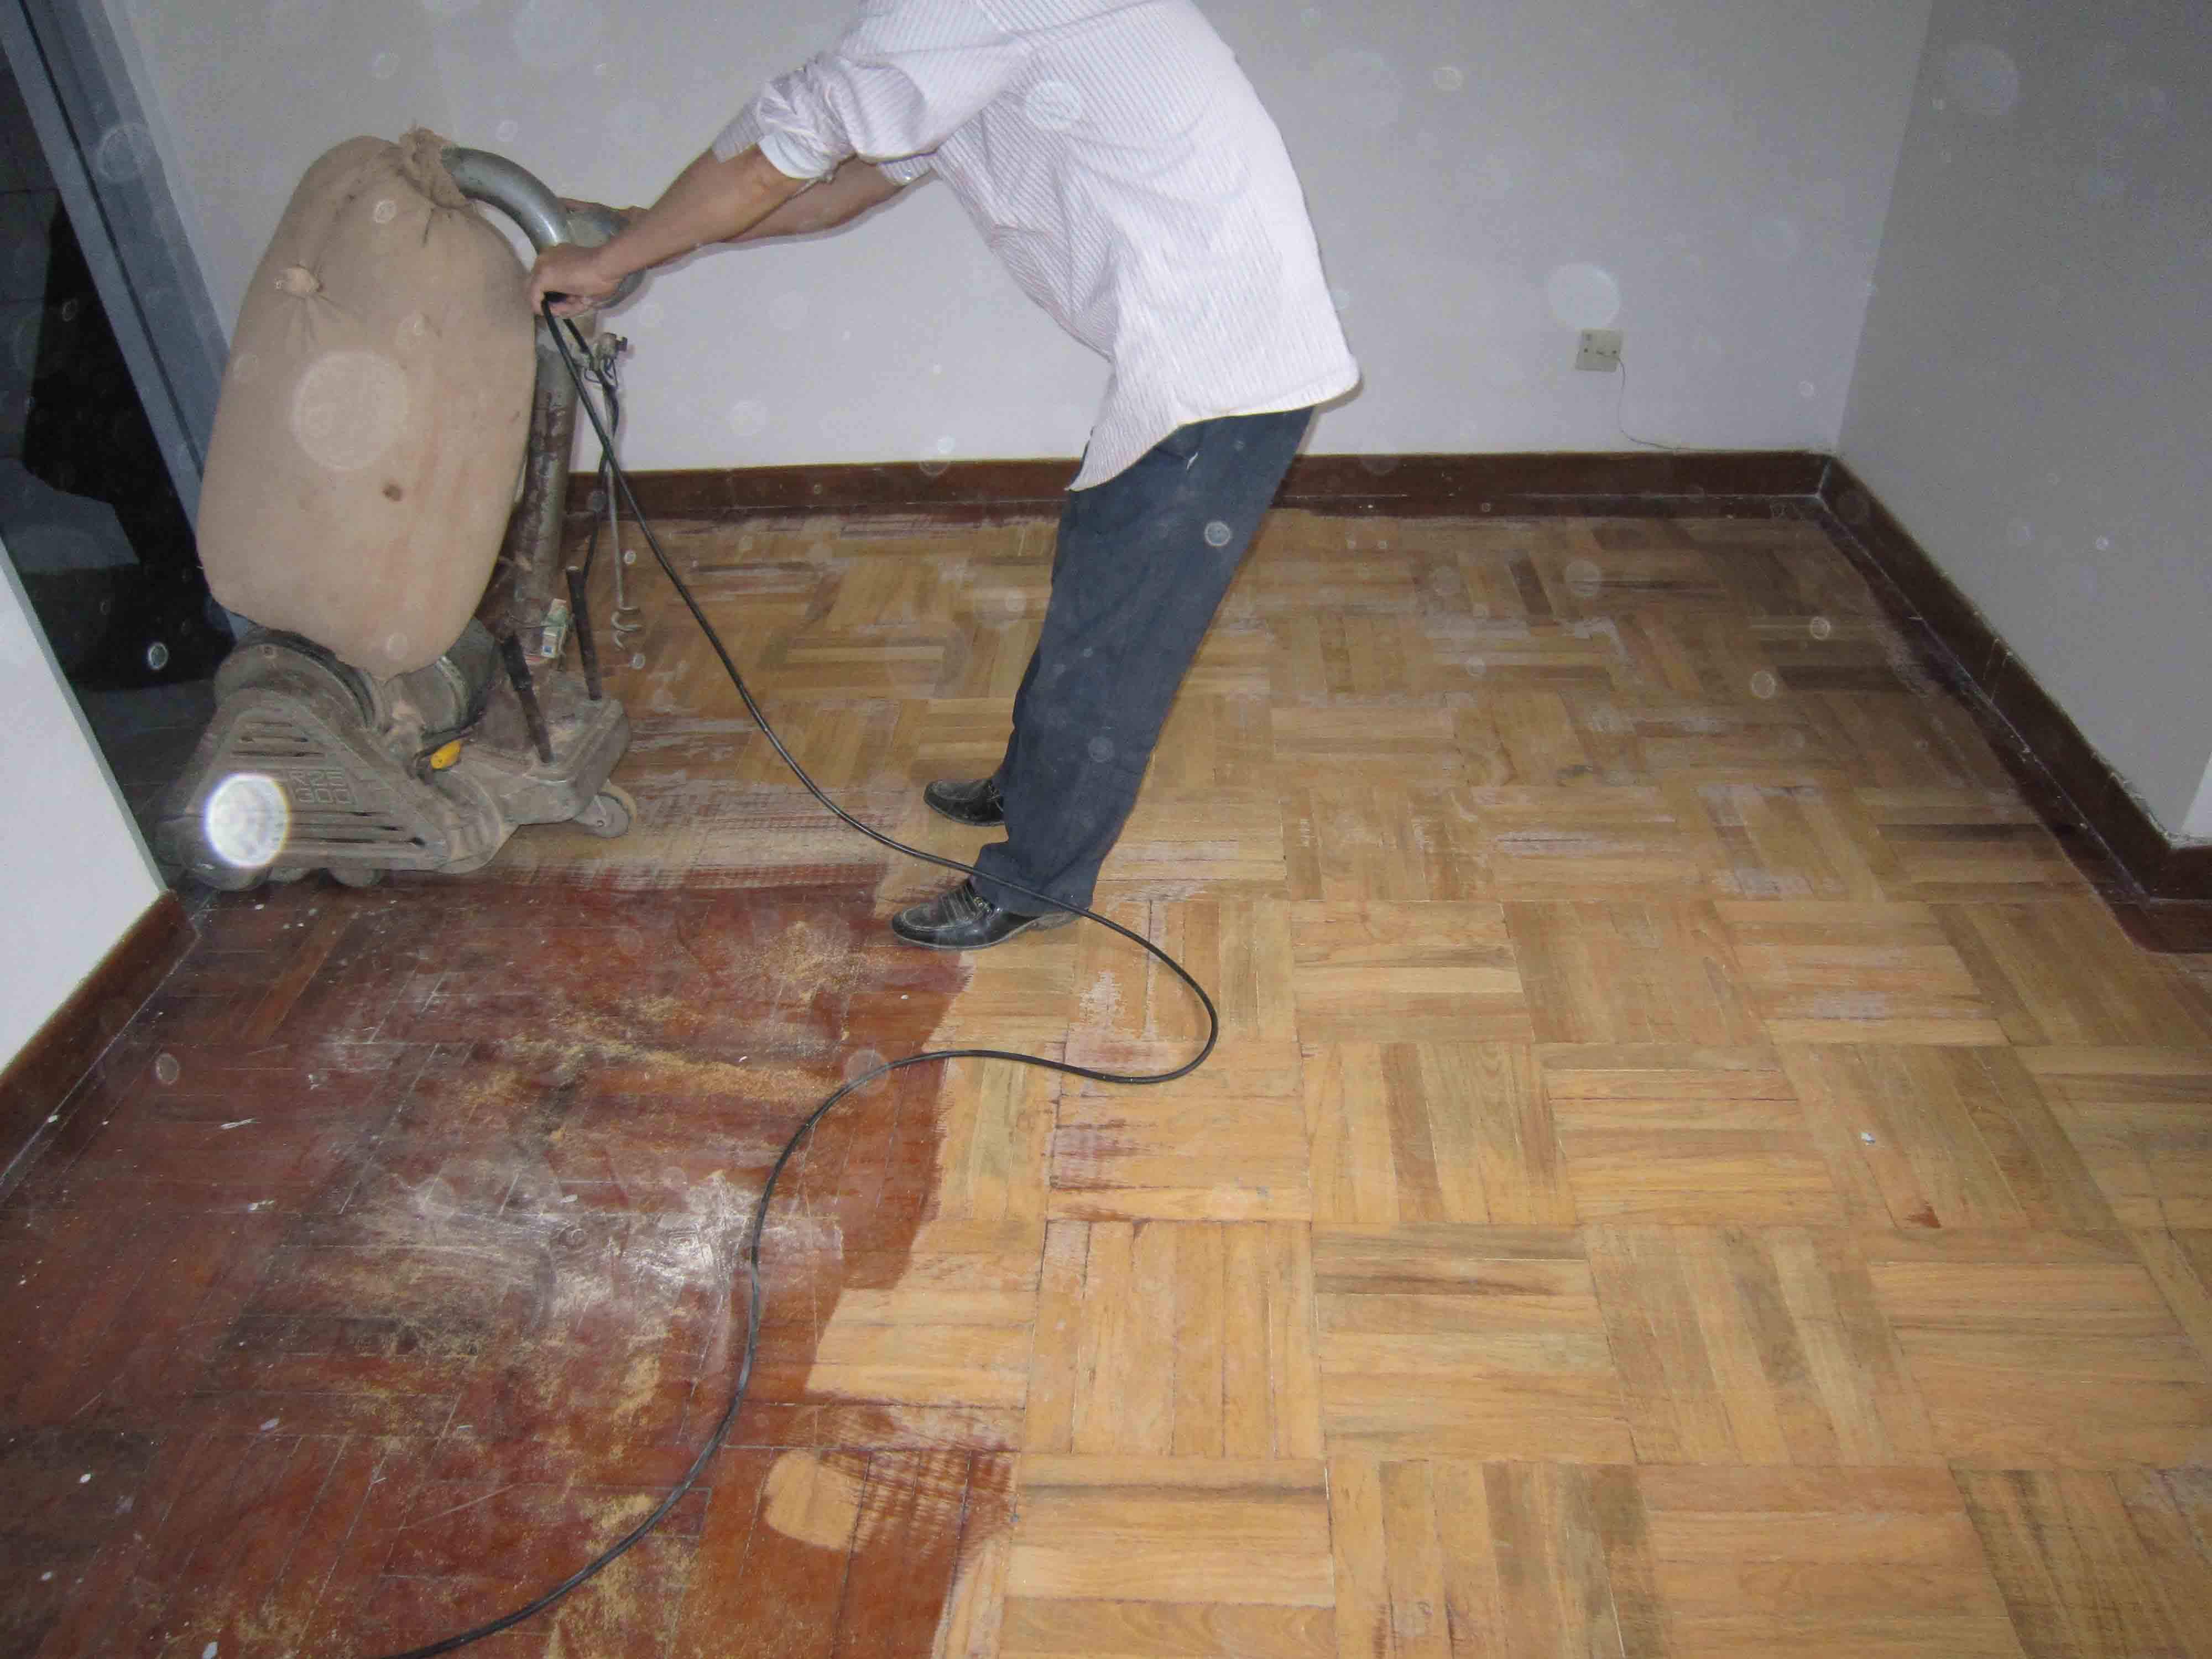 木地板翻新和更换哪个更便捷划算?深圳木地板翻新公司司